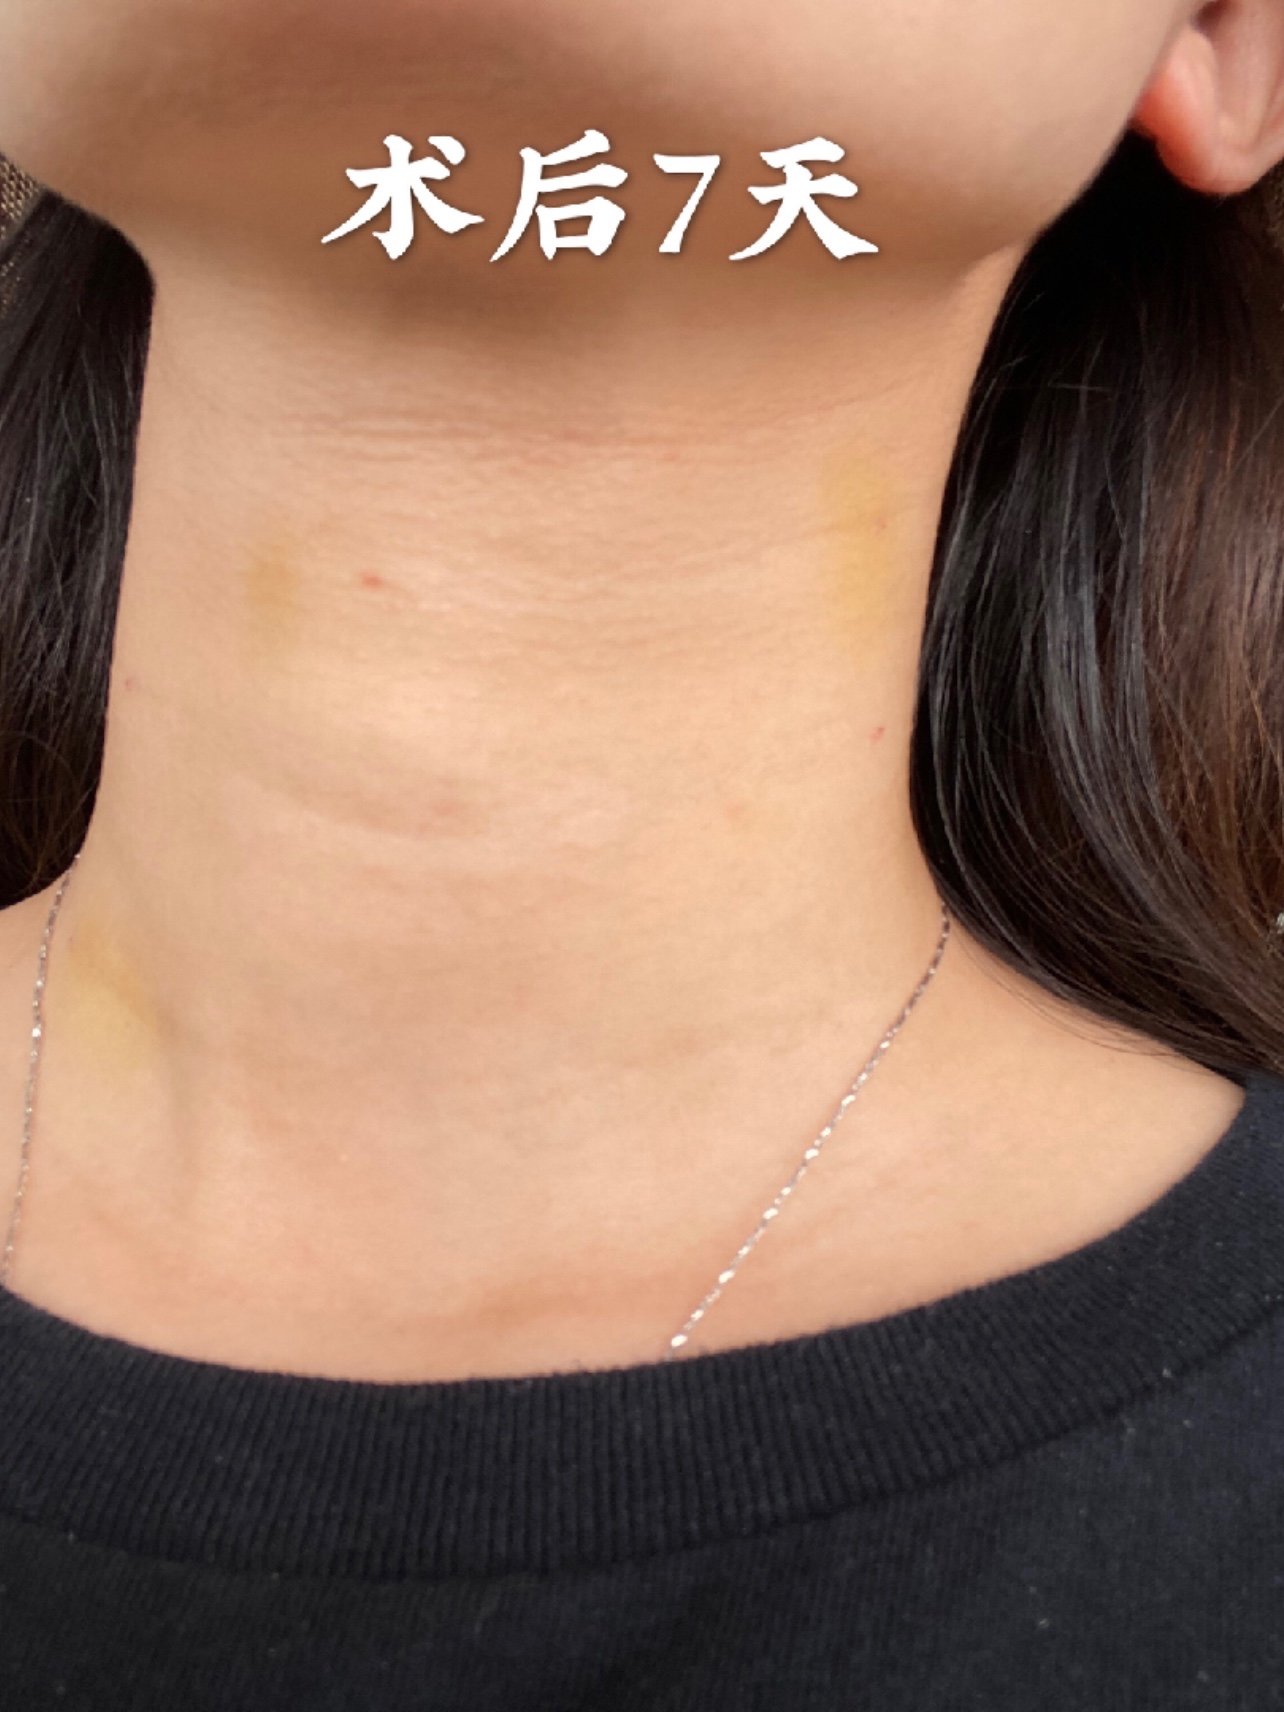 99术前姑娘脖颈子上已经有了三道严重的颈纹,脸还是保